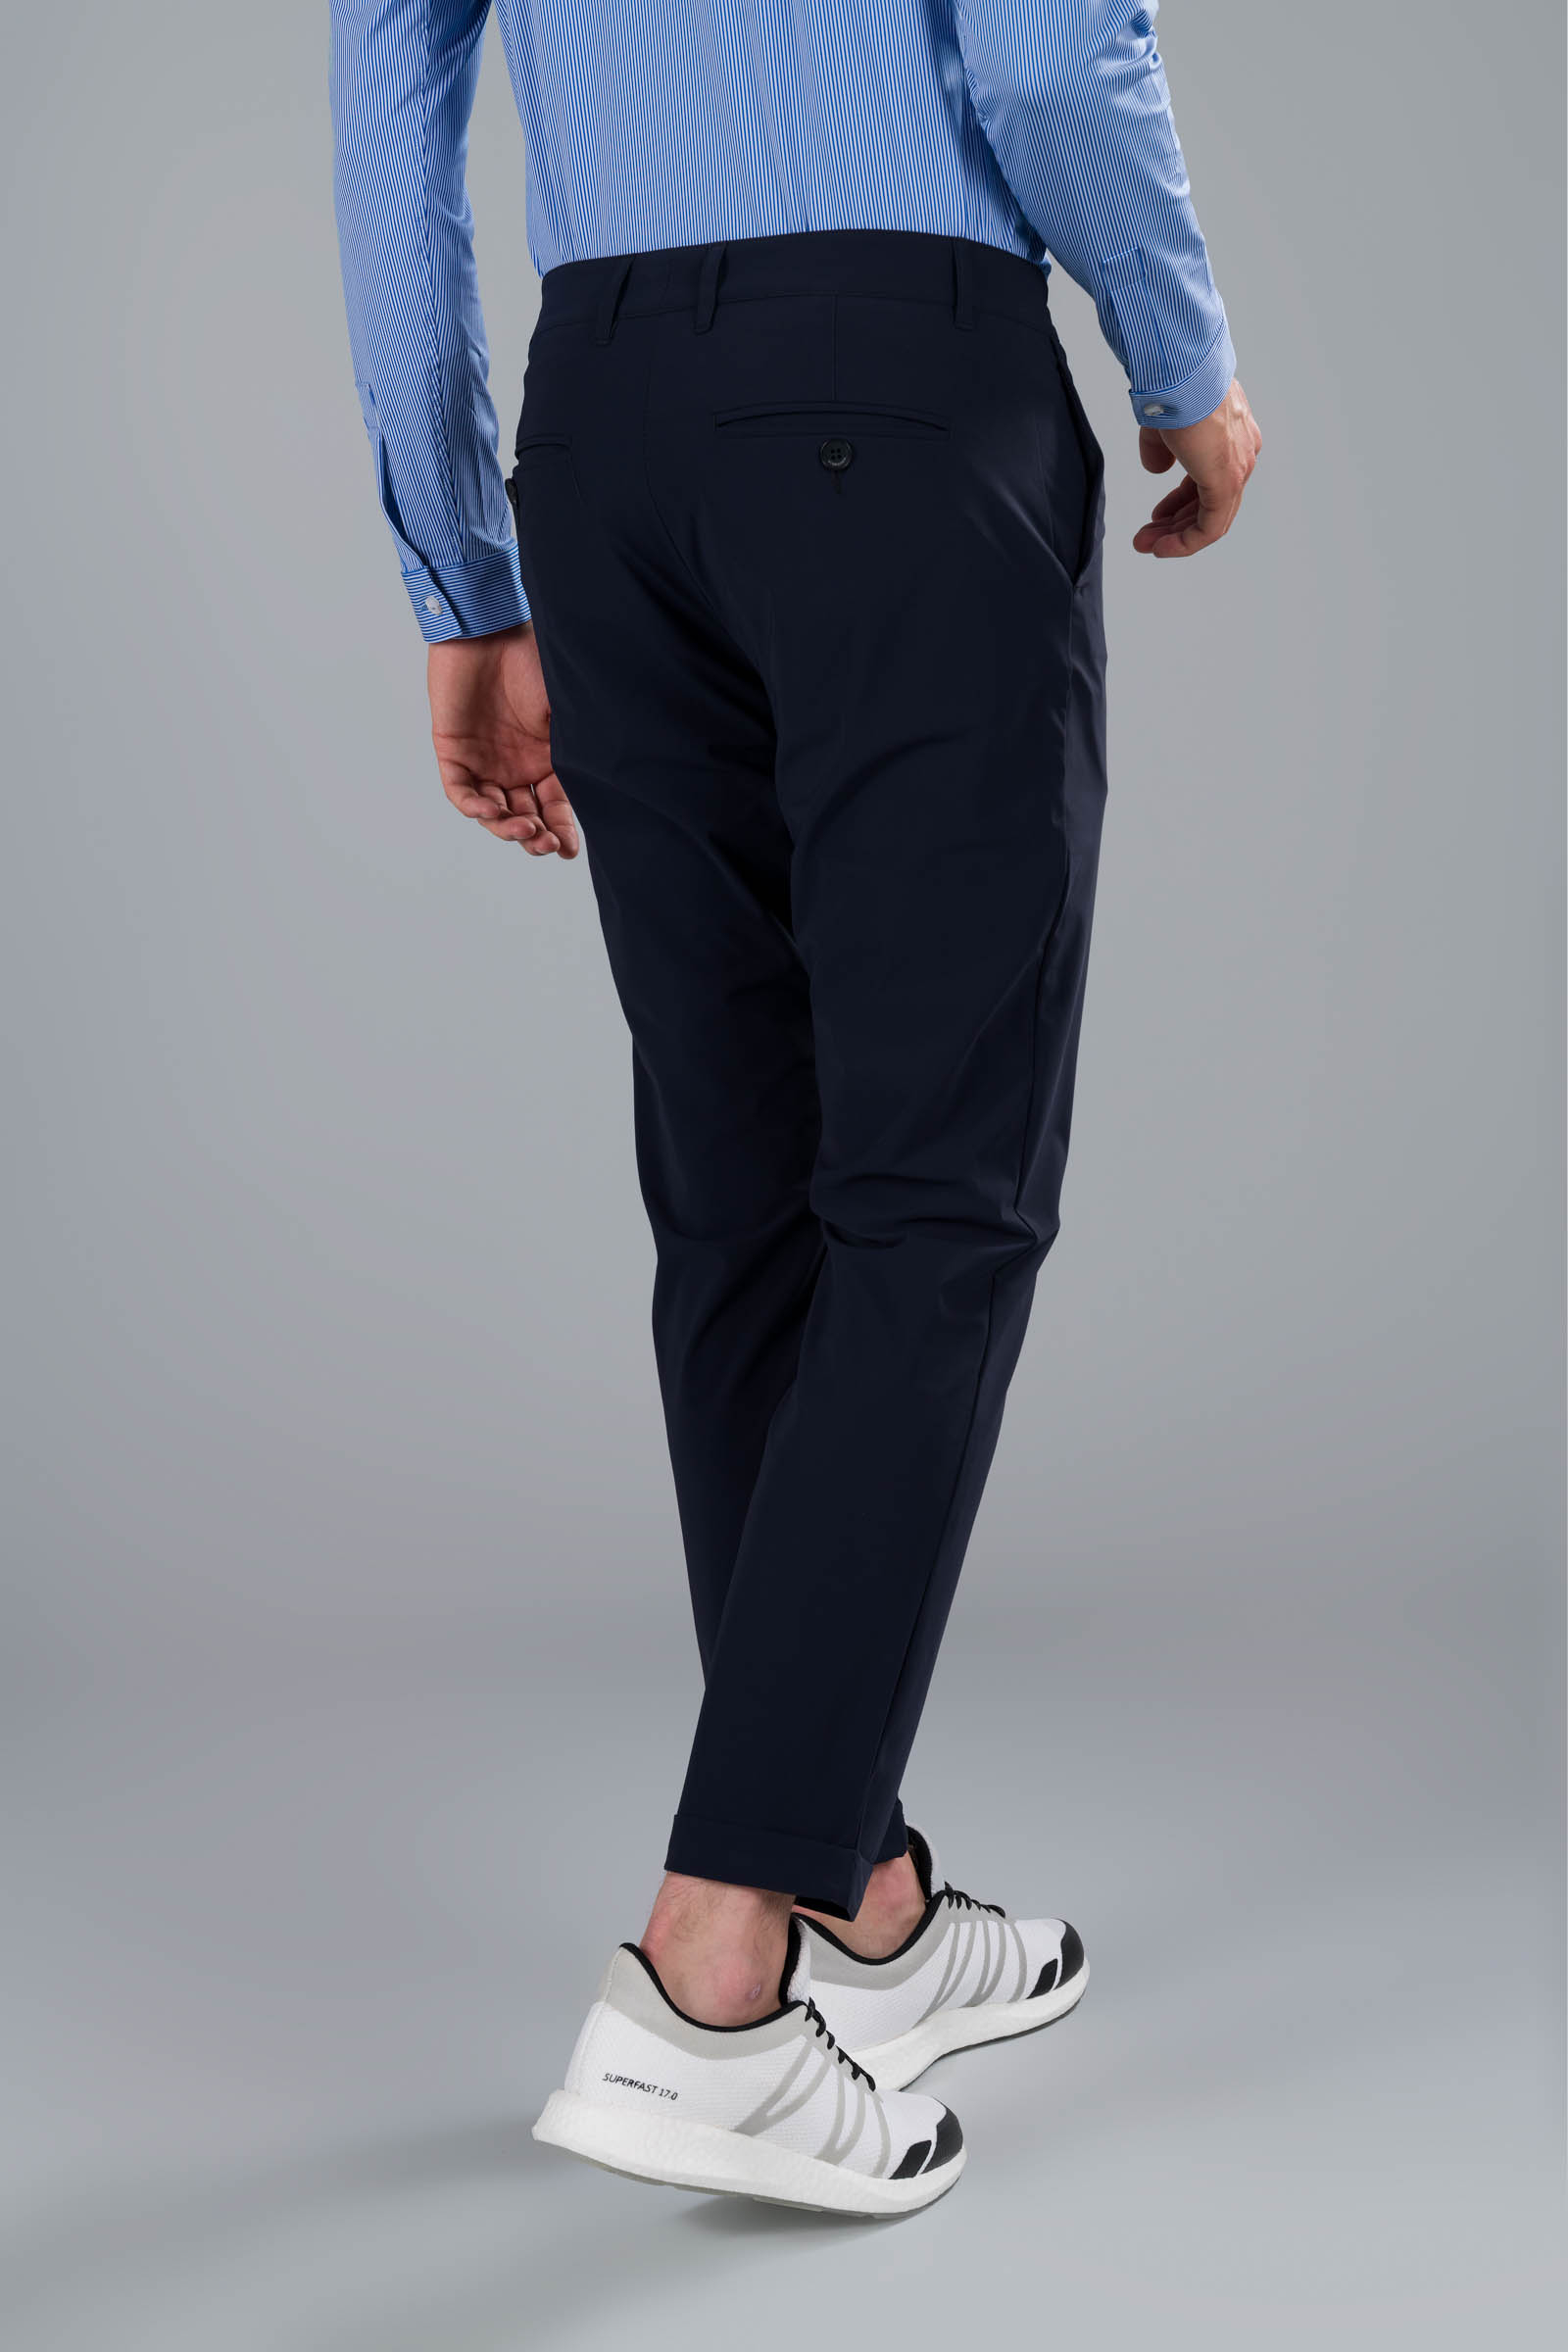 CLASSIC PANTS - BLUE NAVY - Hydrogen - Luxury Sportwear